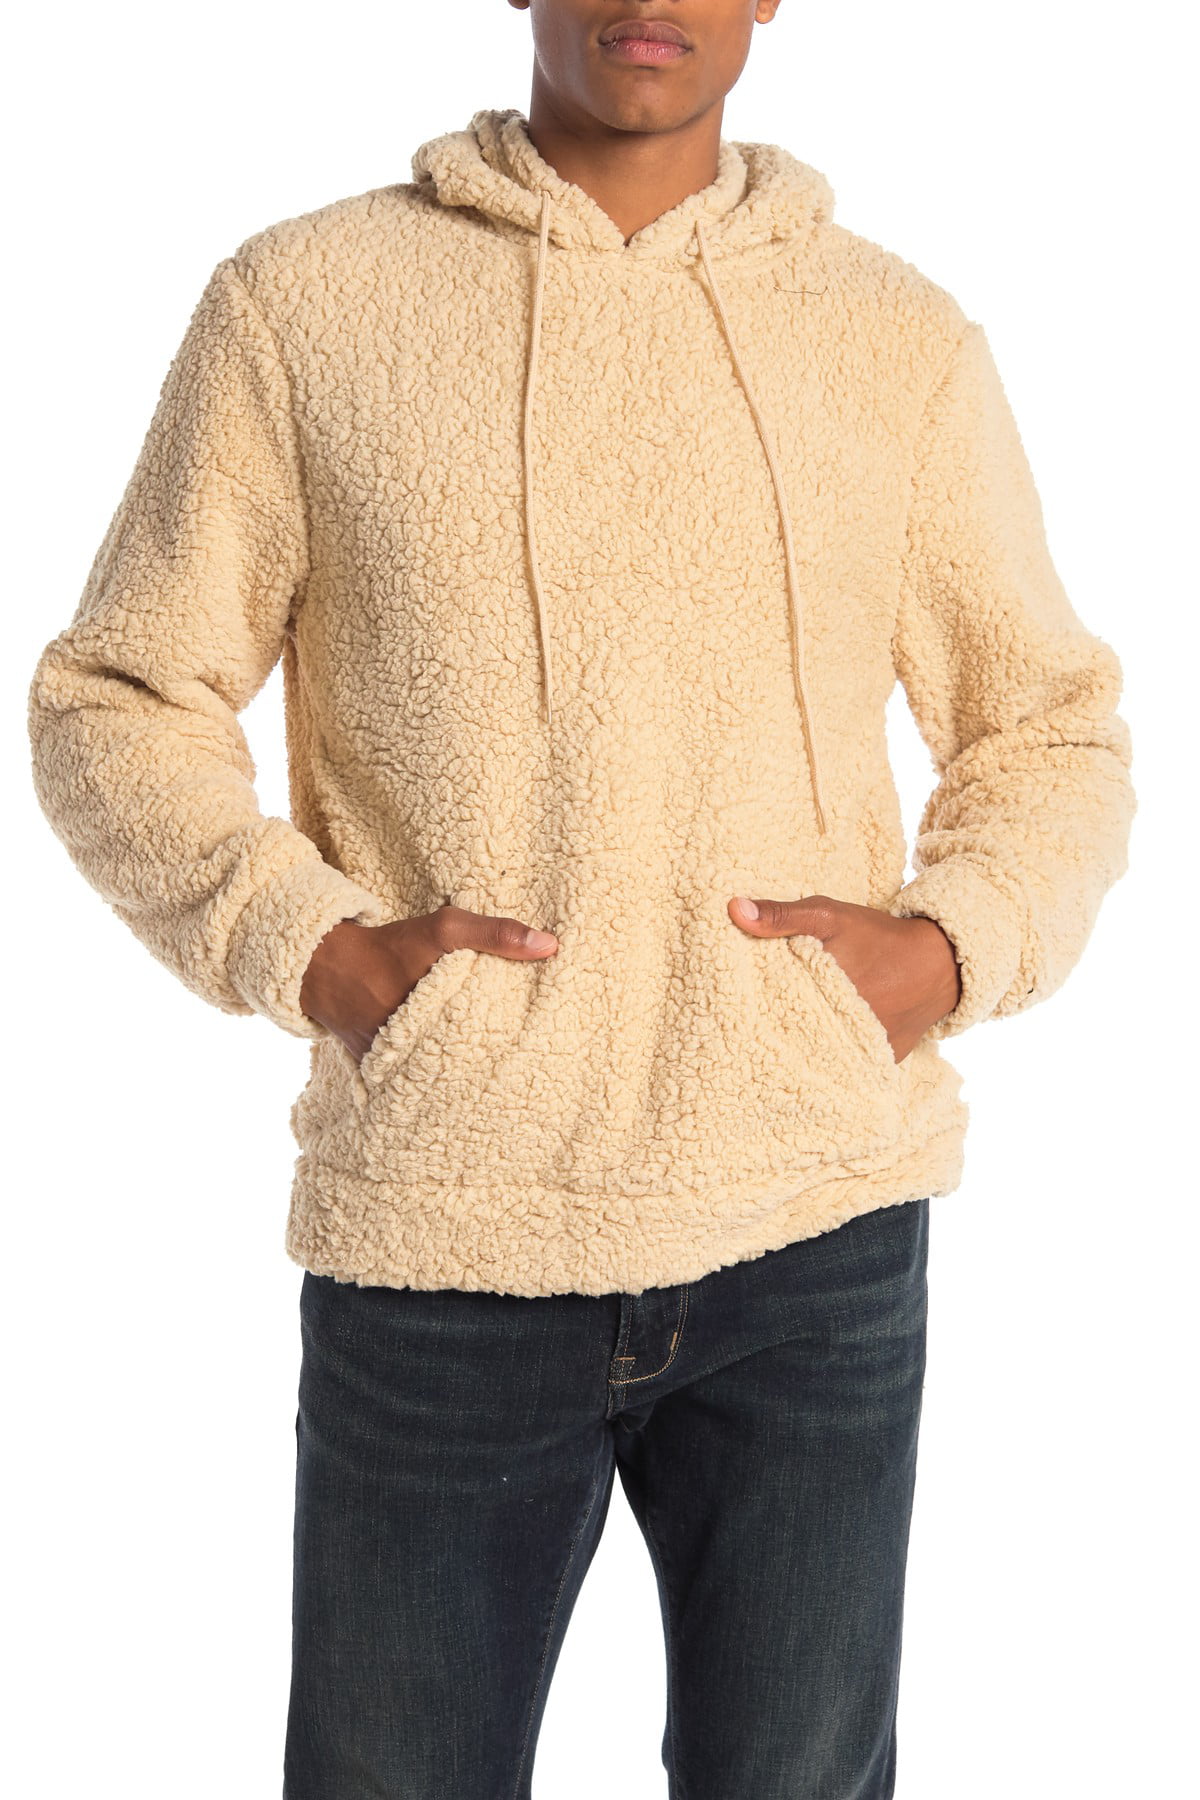 Brooklyn Hoodies & Sweatshirts - Mens Hoodie Large Faux Shearling ...